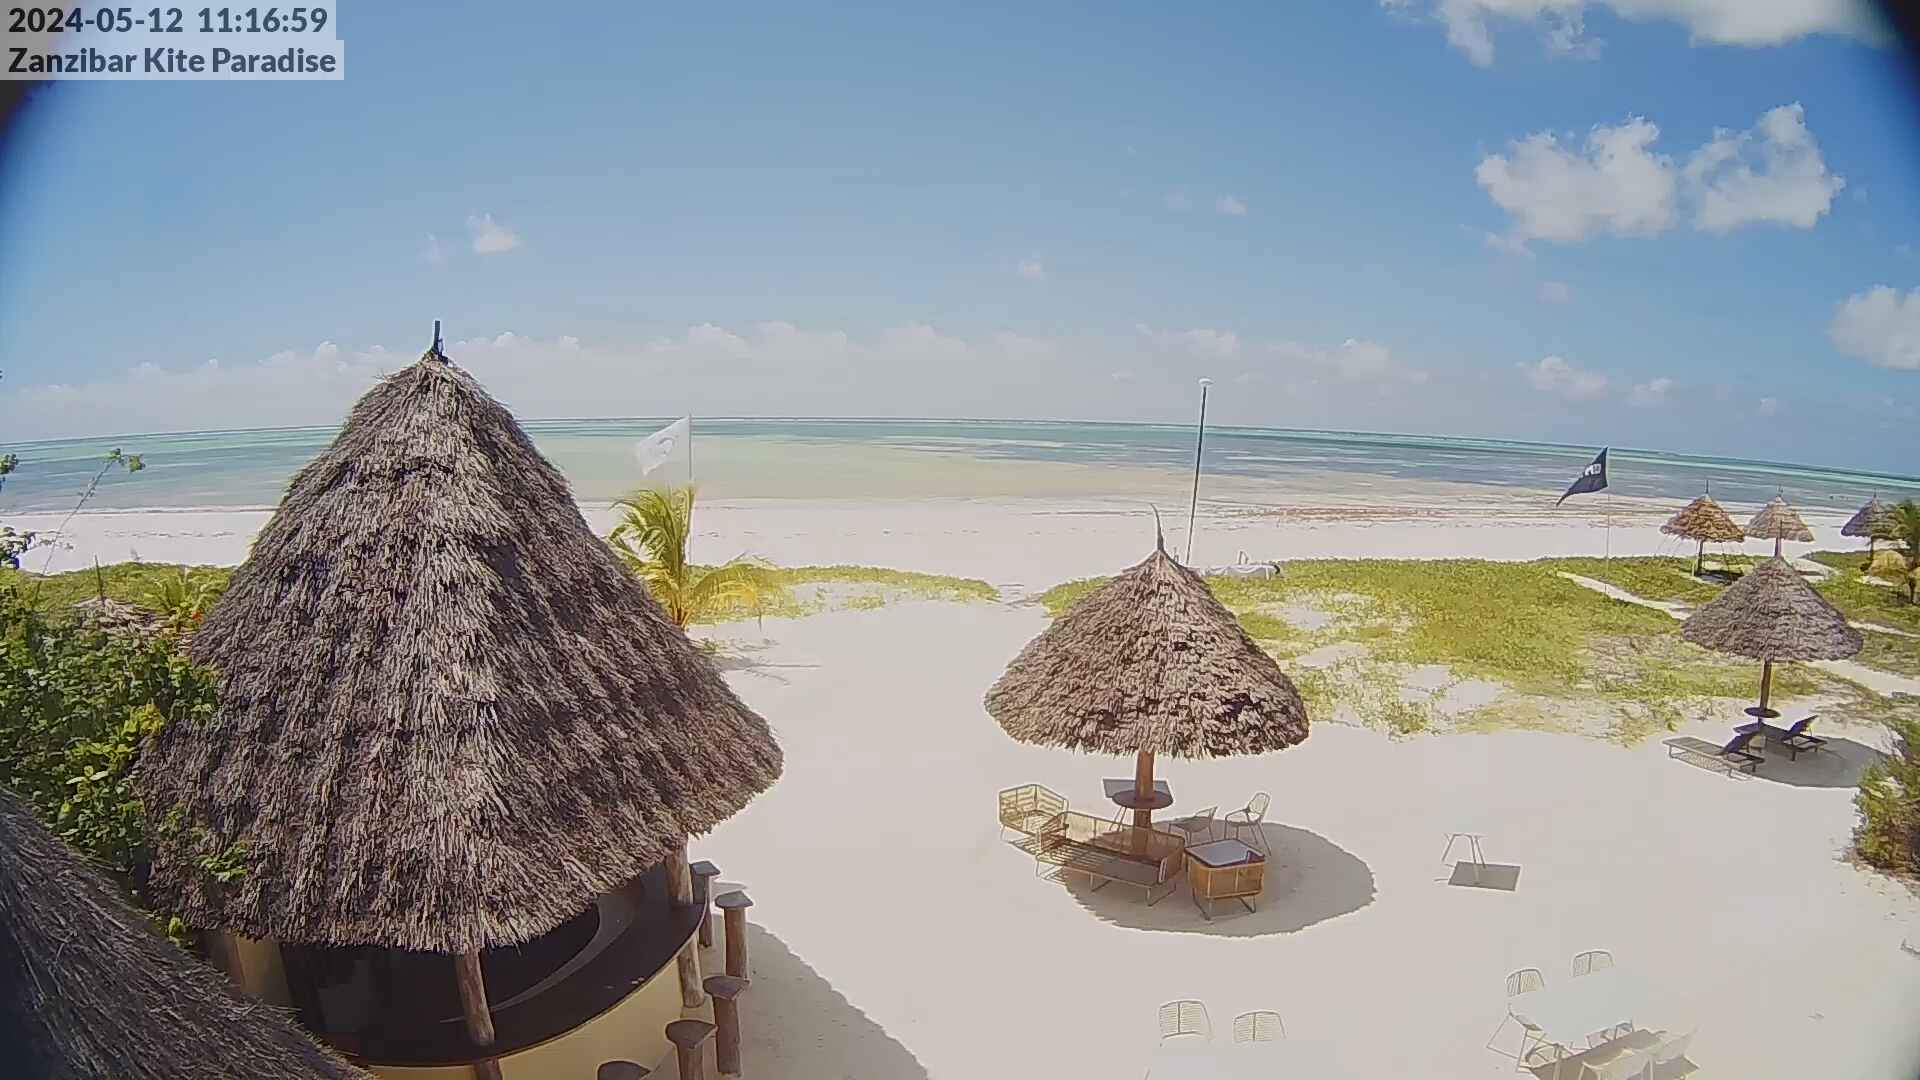 Paje Beach (Zanzibar) Mar. 11:18